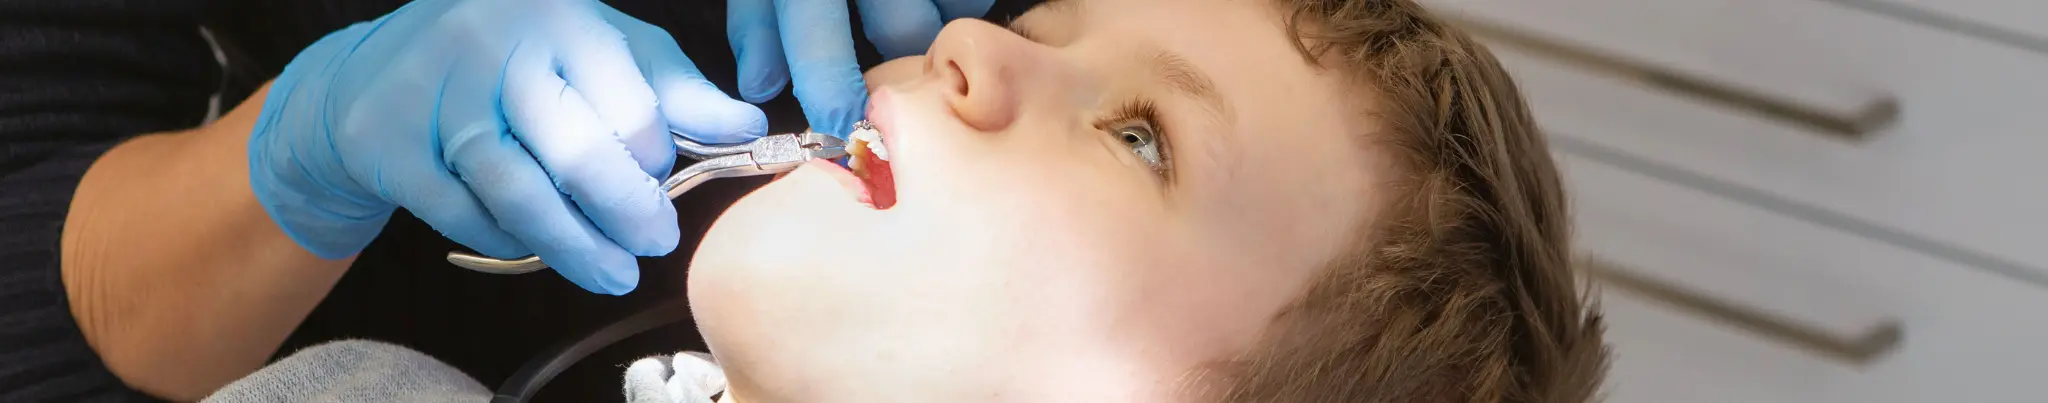 Child Dentistry